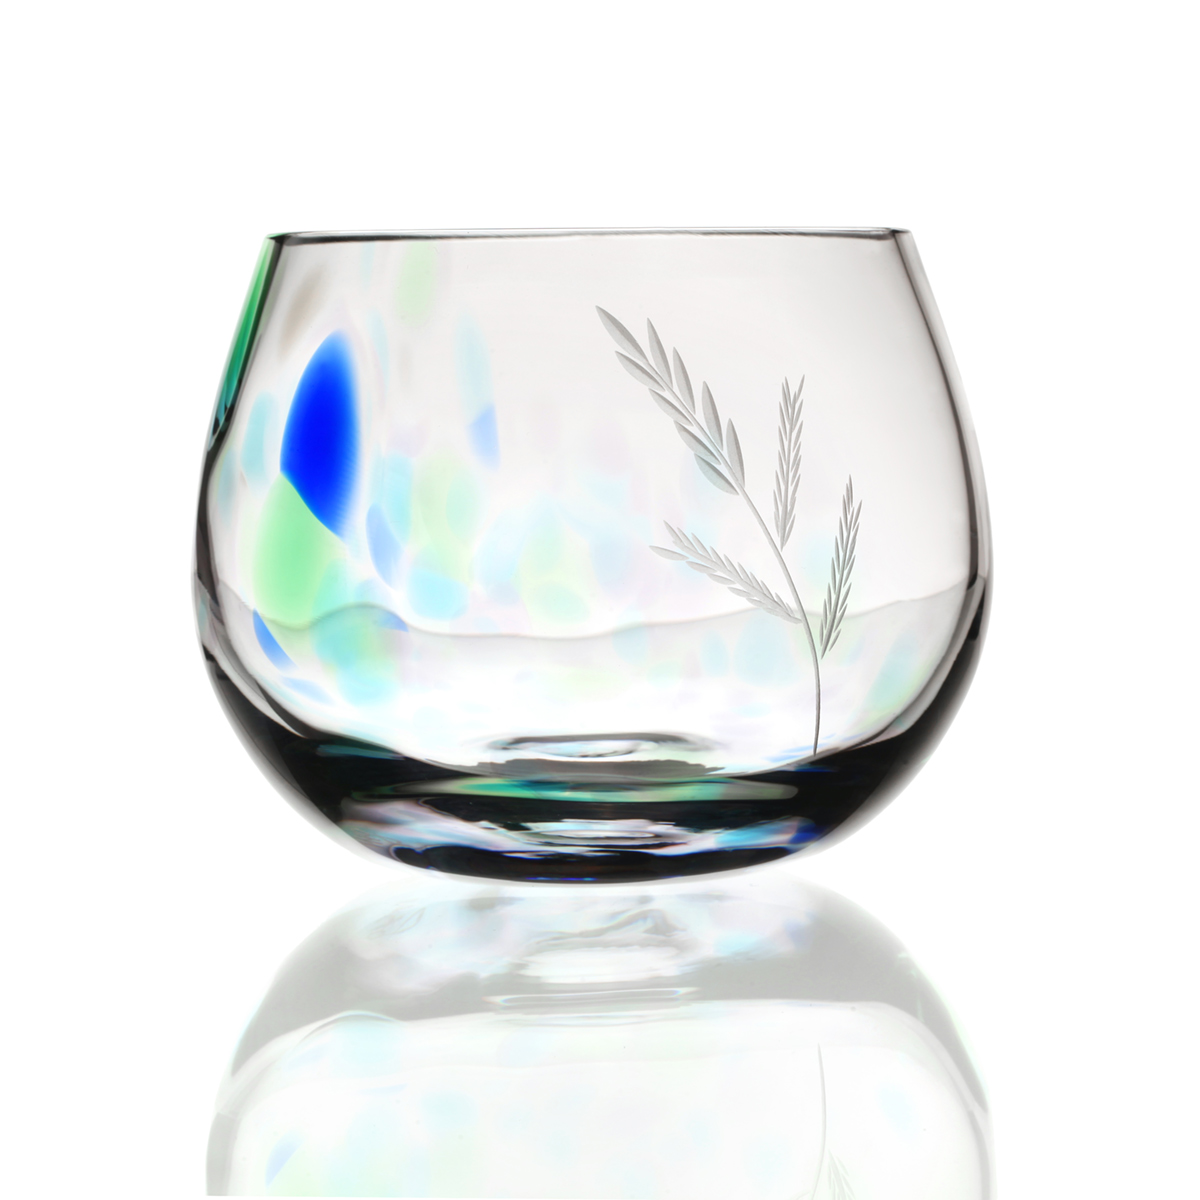 Wild Atlantic Way Teelicht Glas - Handgefertigtes Kristallglas aus Irland